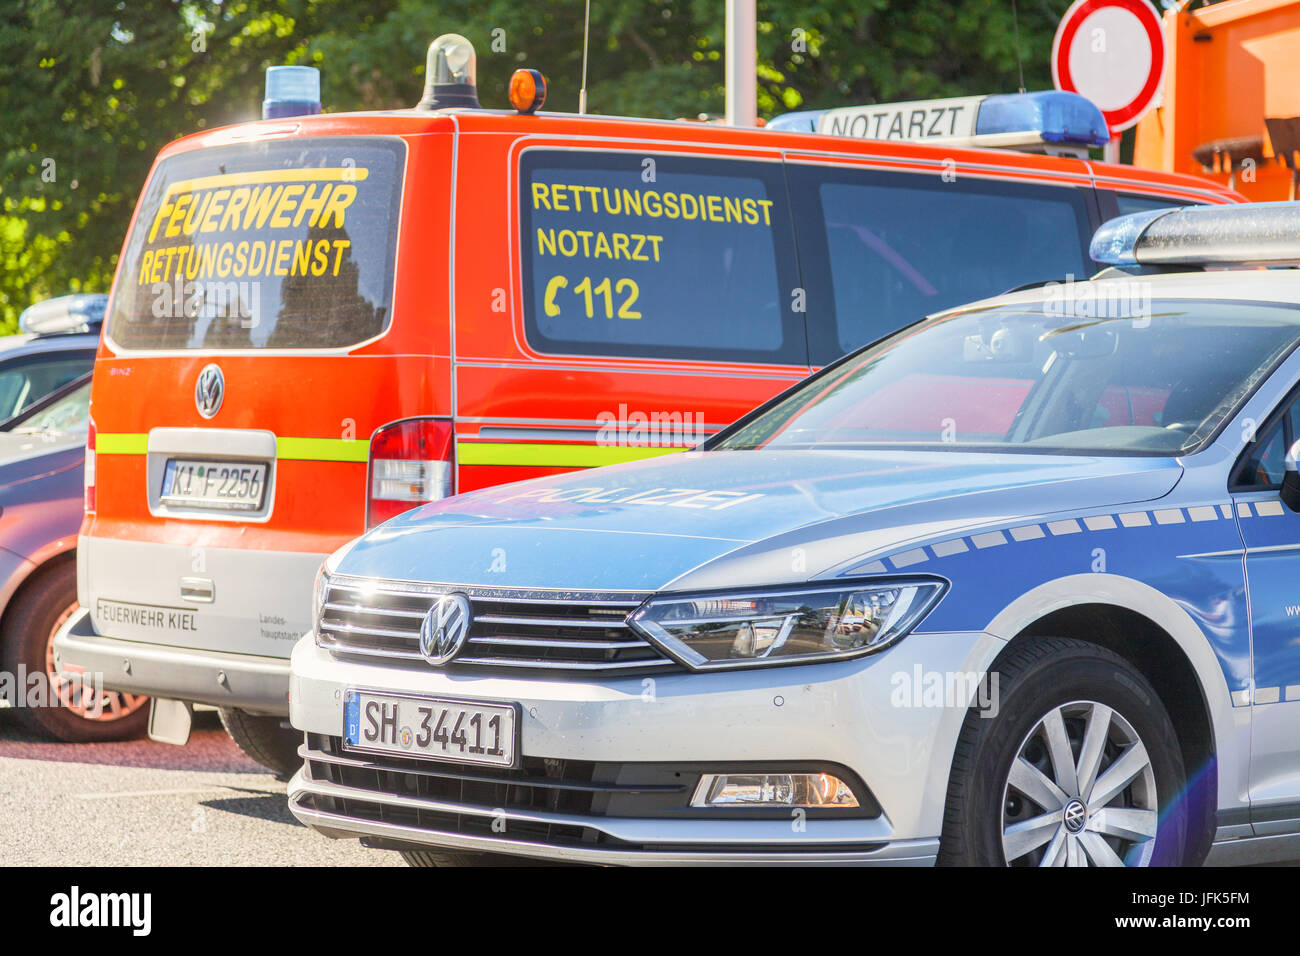 KIEL/Deutschland - VOM 20. JUNI 2017: Deutsche Polizei und Krankenwagen Auto steht auf öffentliche Veranstaltung Kieler Woche. Stockfoto